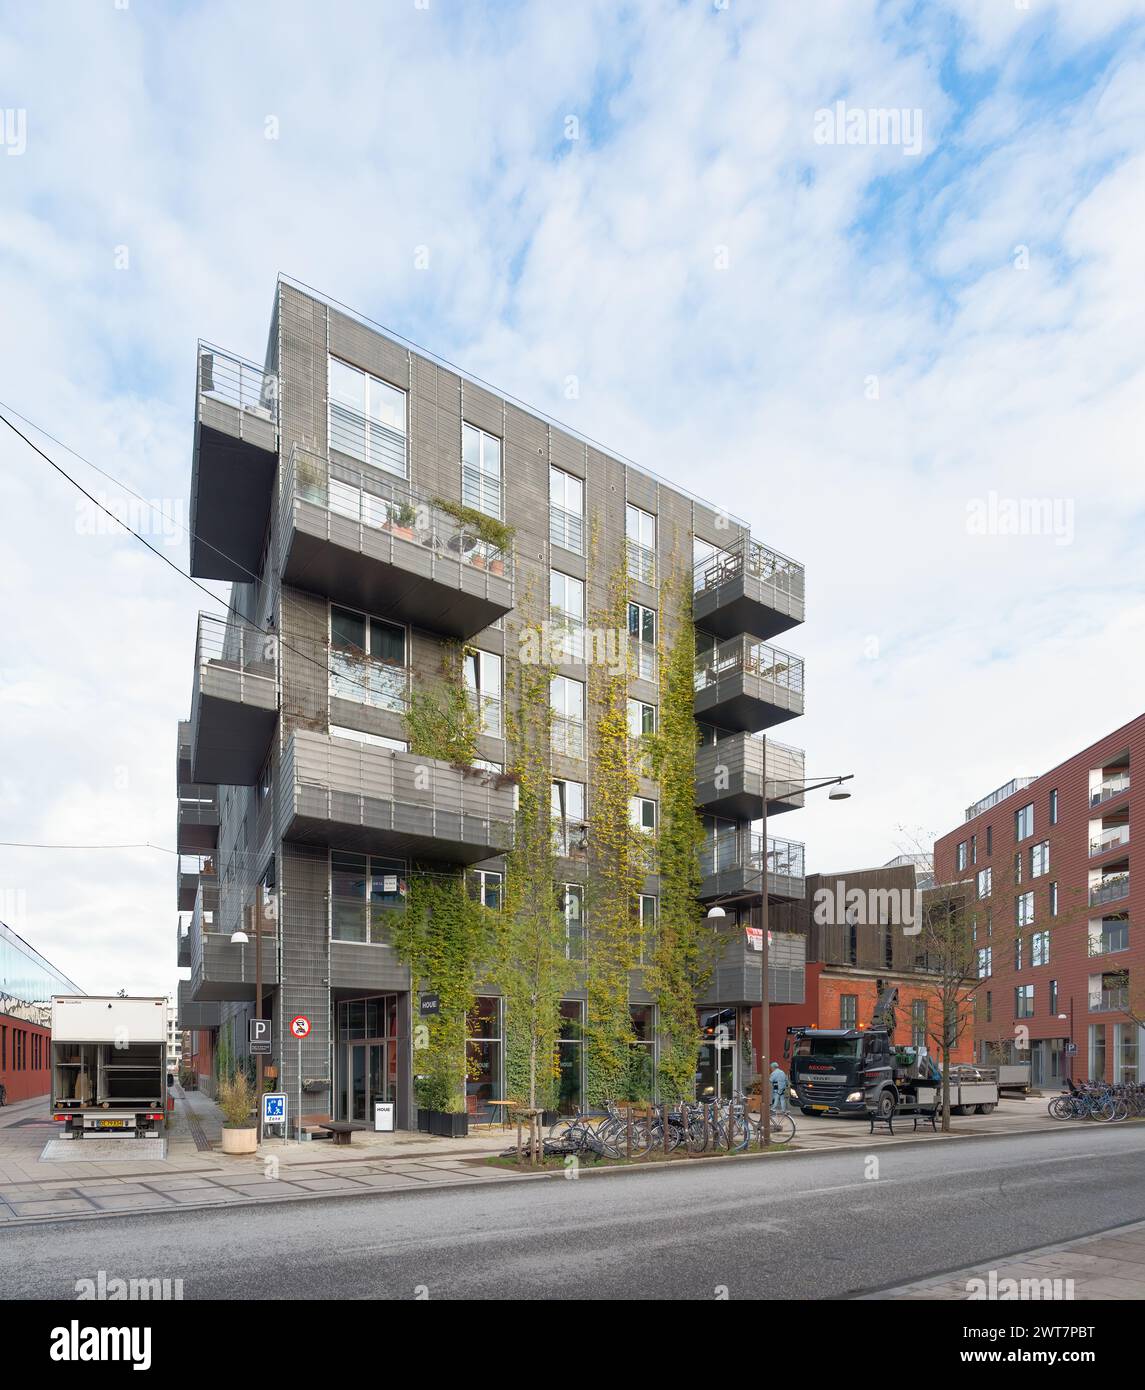 Copenhagen, Denmark - Housing block with balconies at Nordhavn Stock Photo